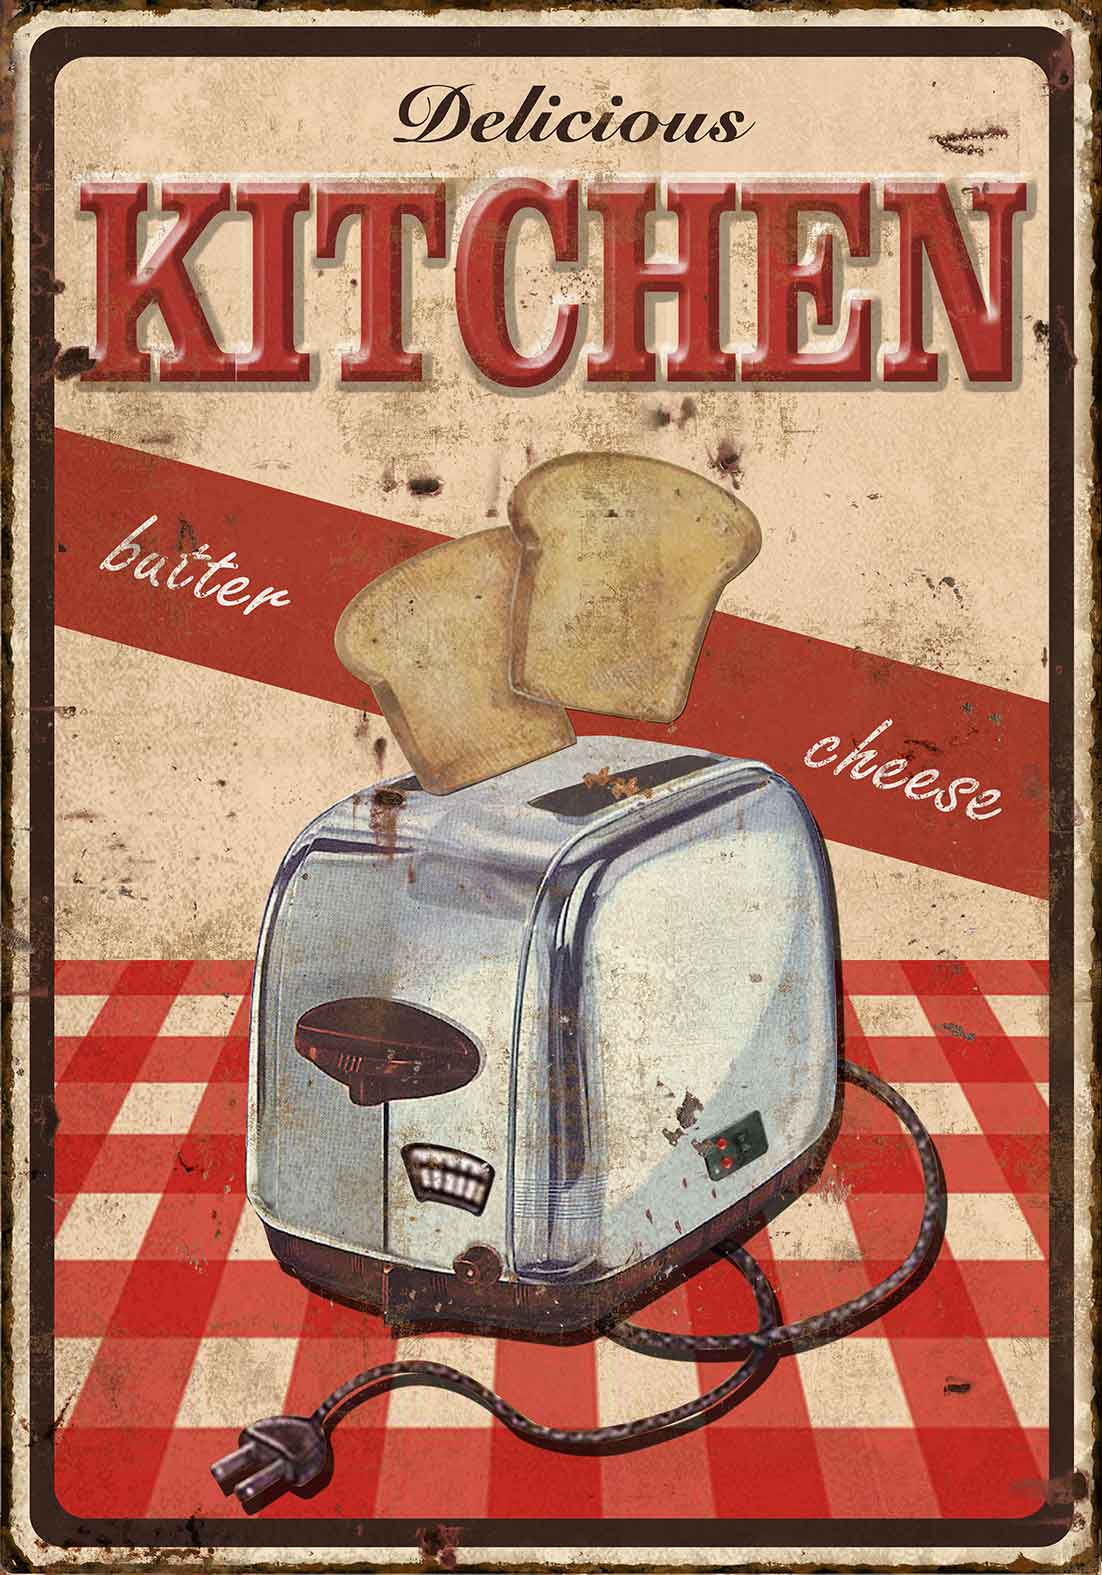 https://media.cdnws.com/_i/241643/4590/453/90/plaque-deco-vintage-kitchen-cuisine.jpeg